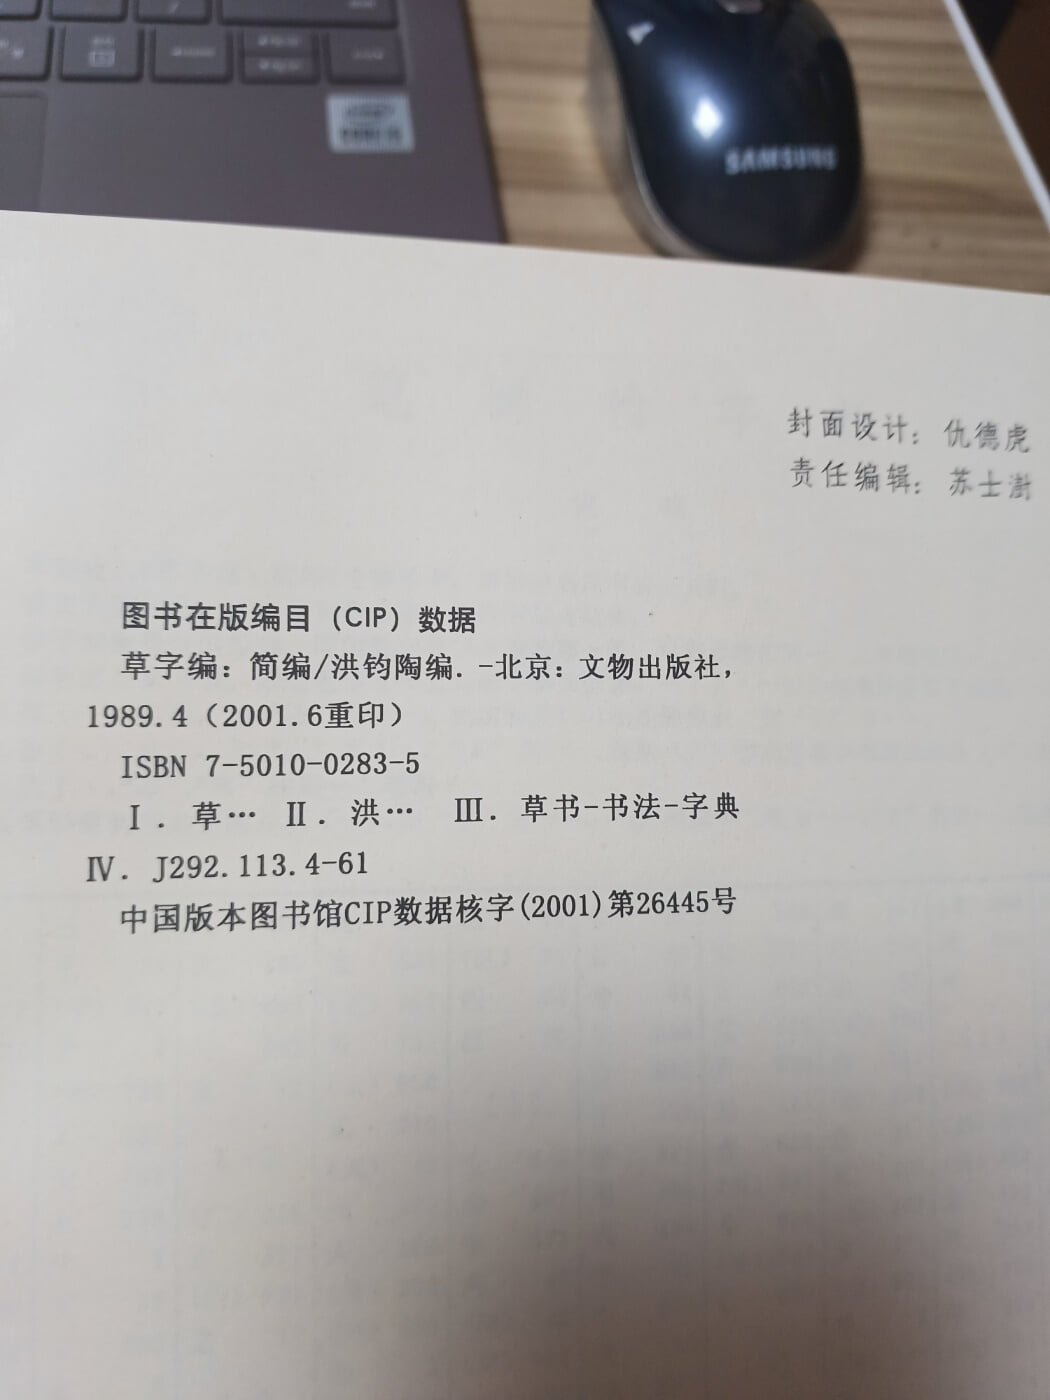 草字編 簡編 (초자편 간편)1989년초판.2001년6월발행